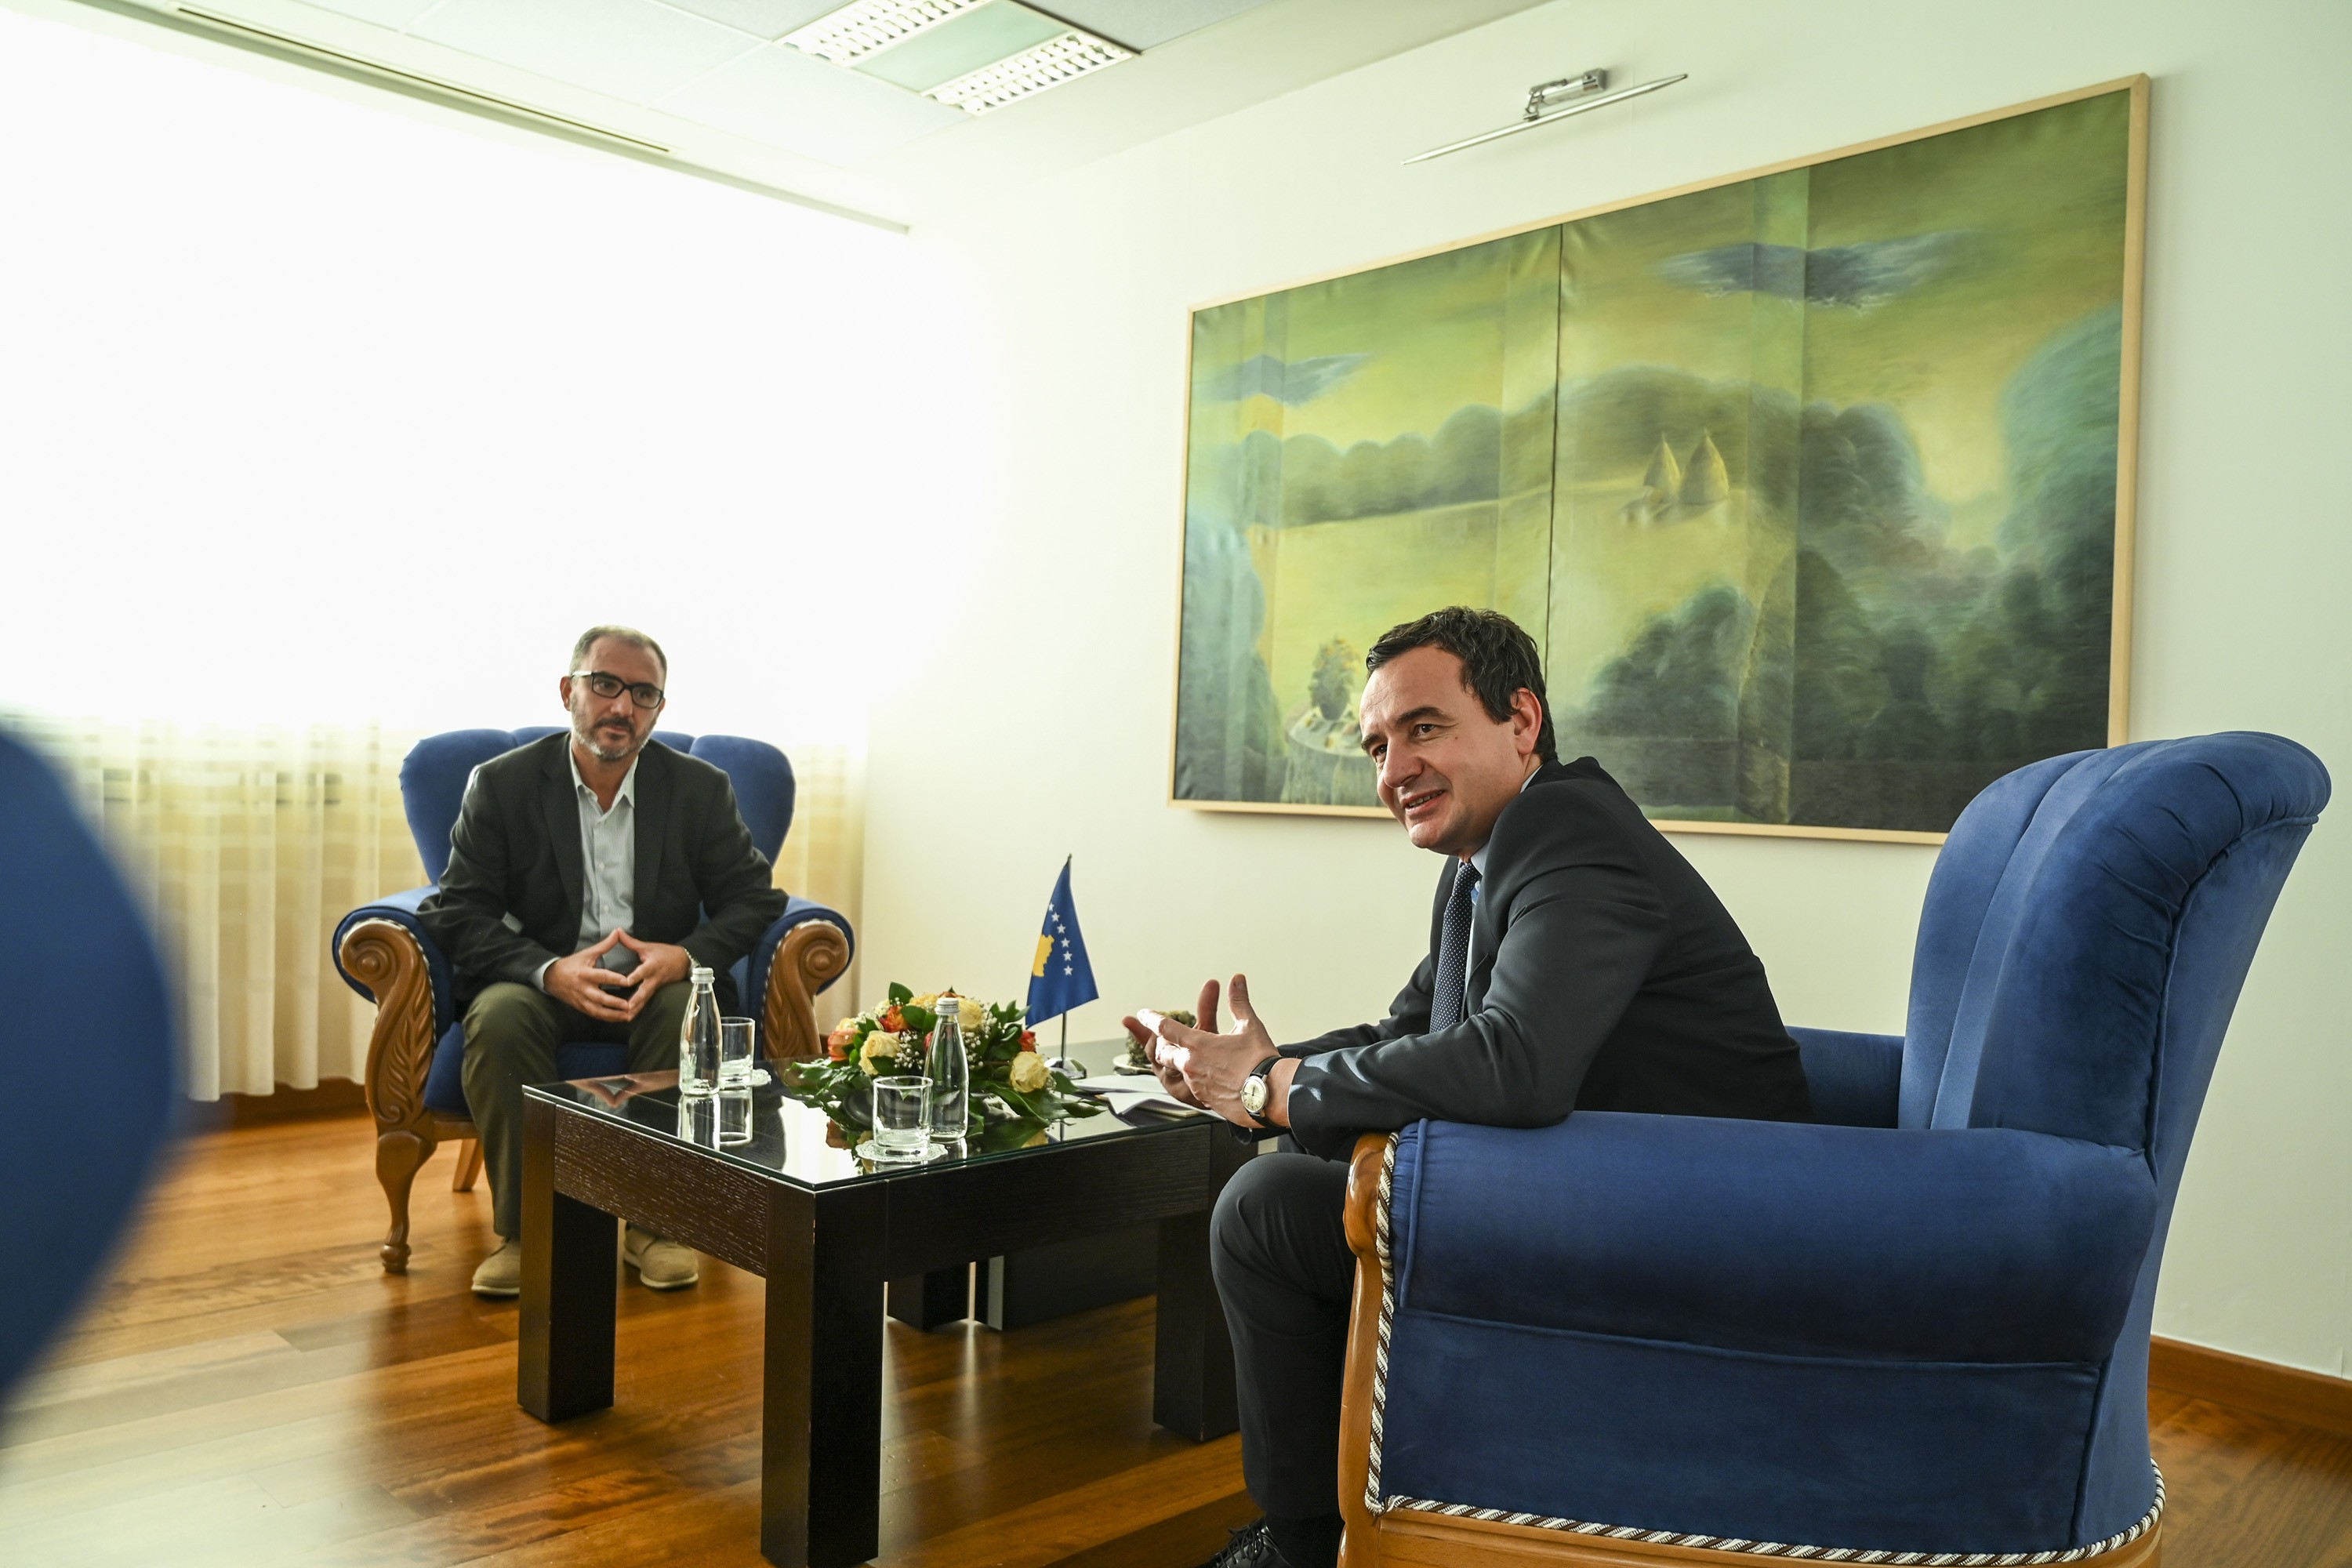 Kryeministri Kurti takohet me kryetarin e BSPK-së, Atdhe Hykolli